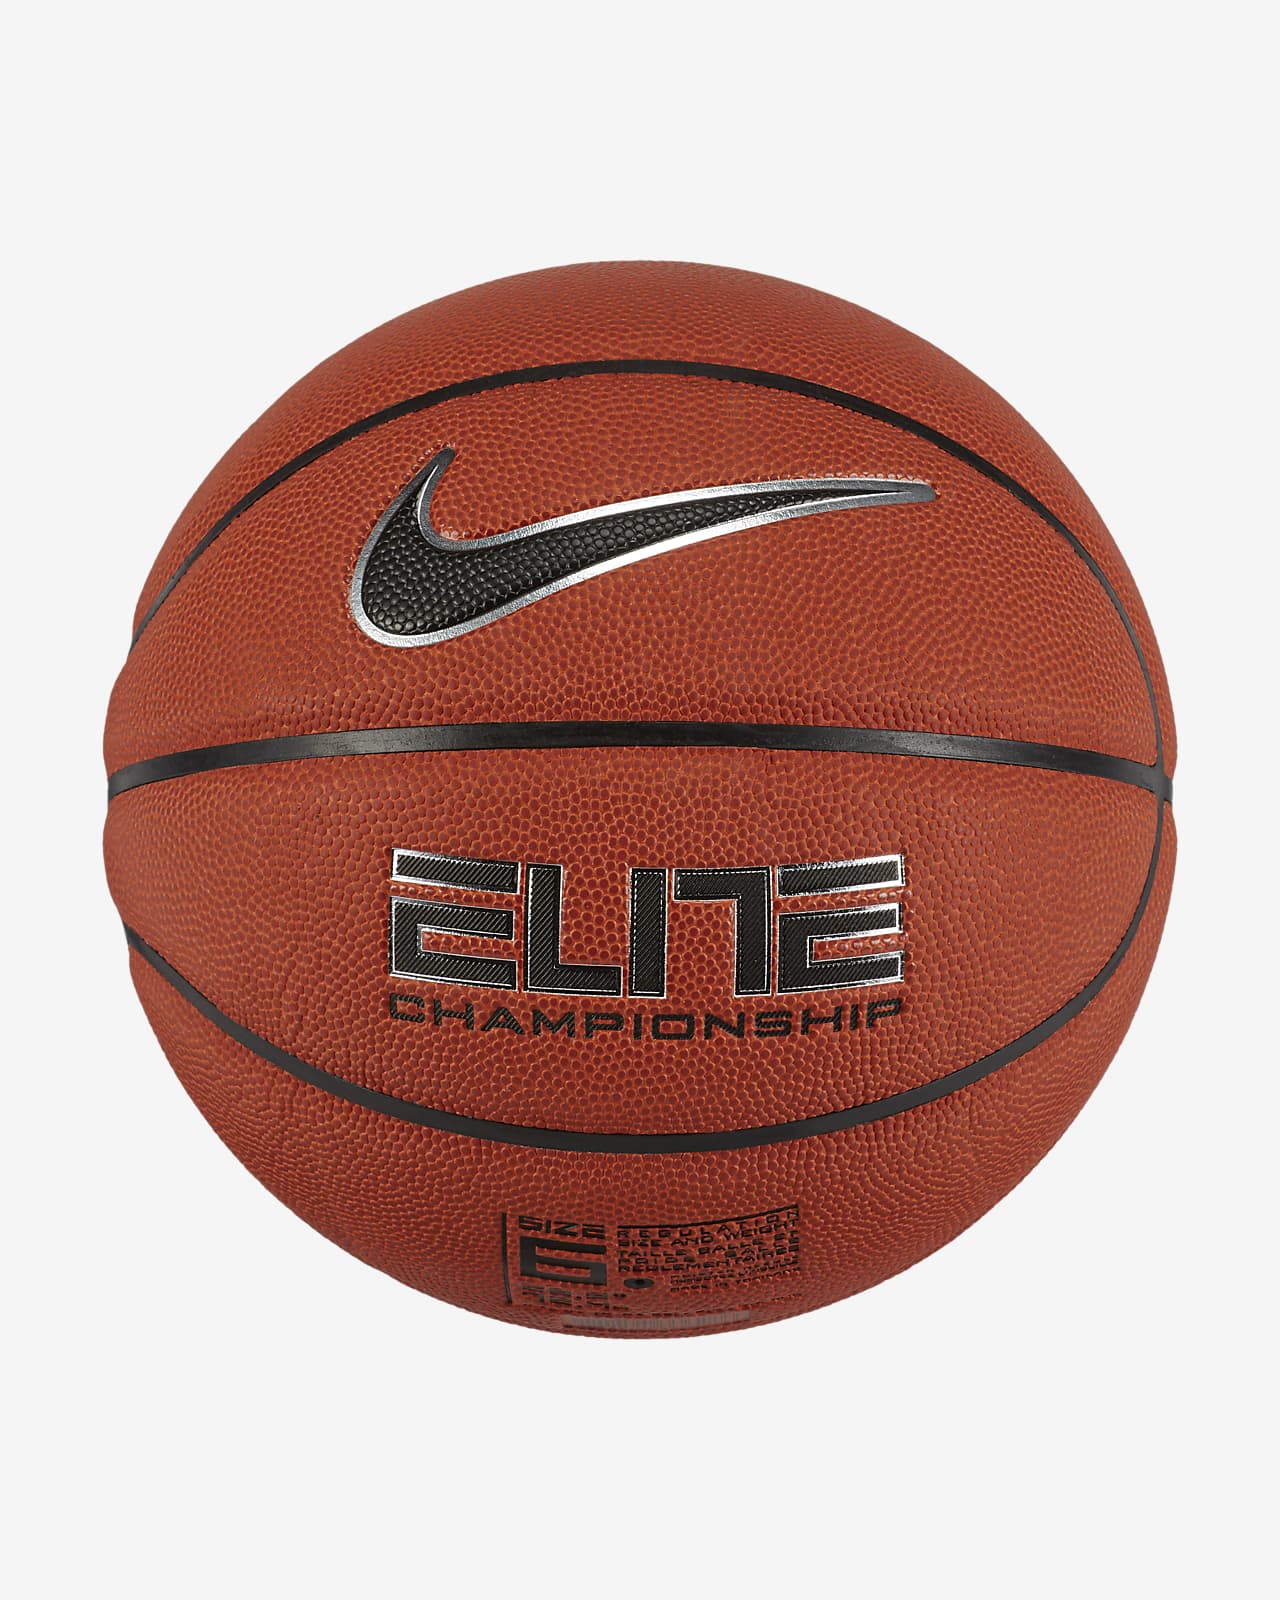 Pelota de básquetbol Nike Elite Championship para cancha cubierta. Nike.com